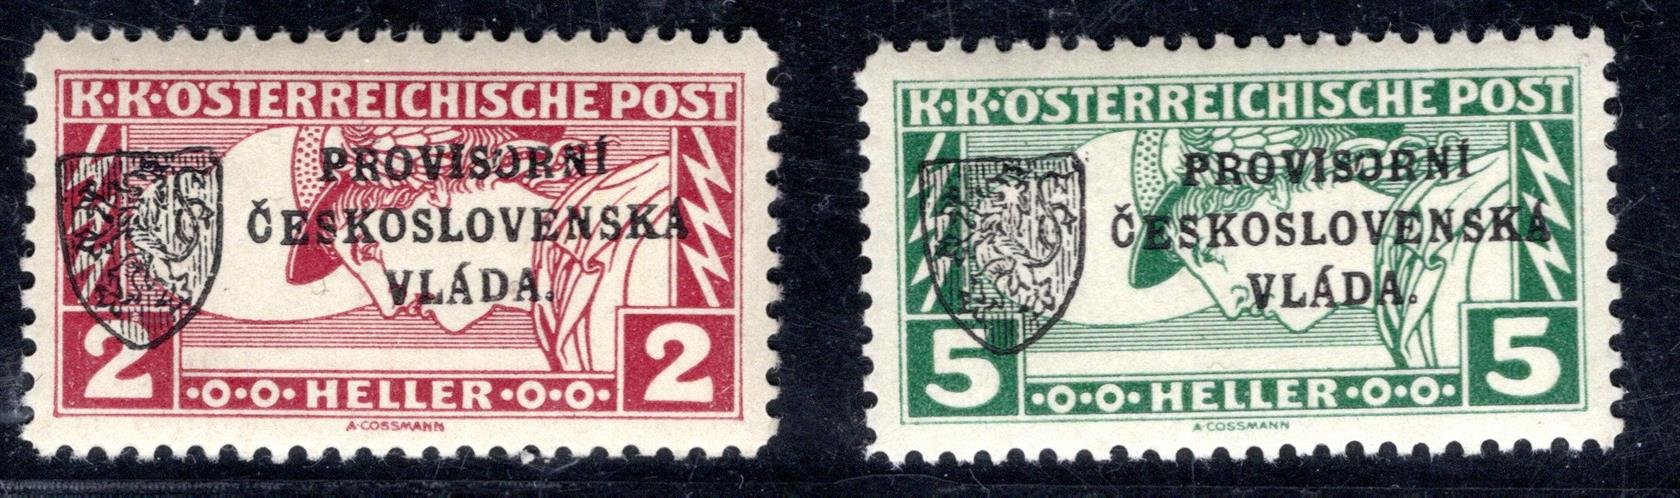 RV 20 - RV 21 ; 2 h a 5 H spěšné, I. Pražský Přetisk  - malý znak 